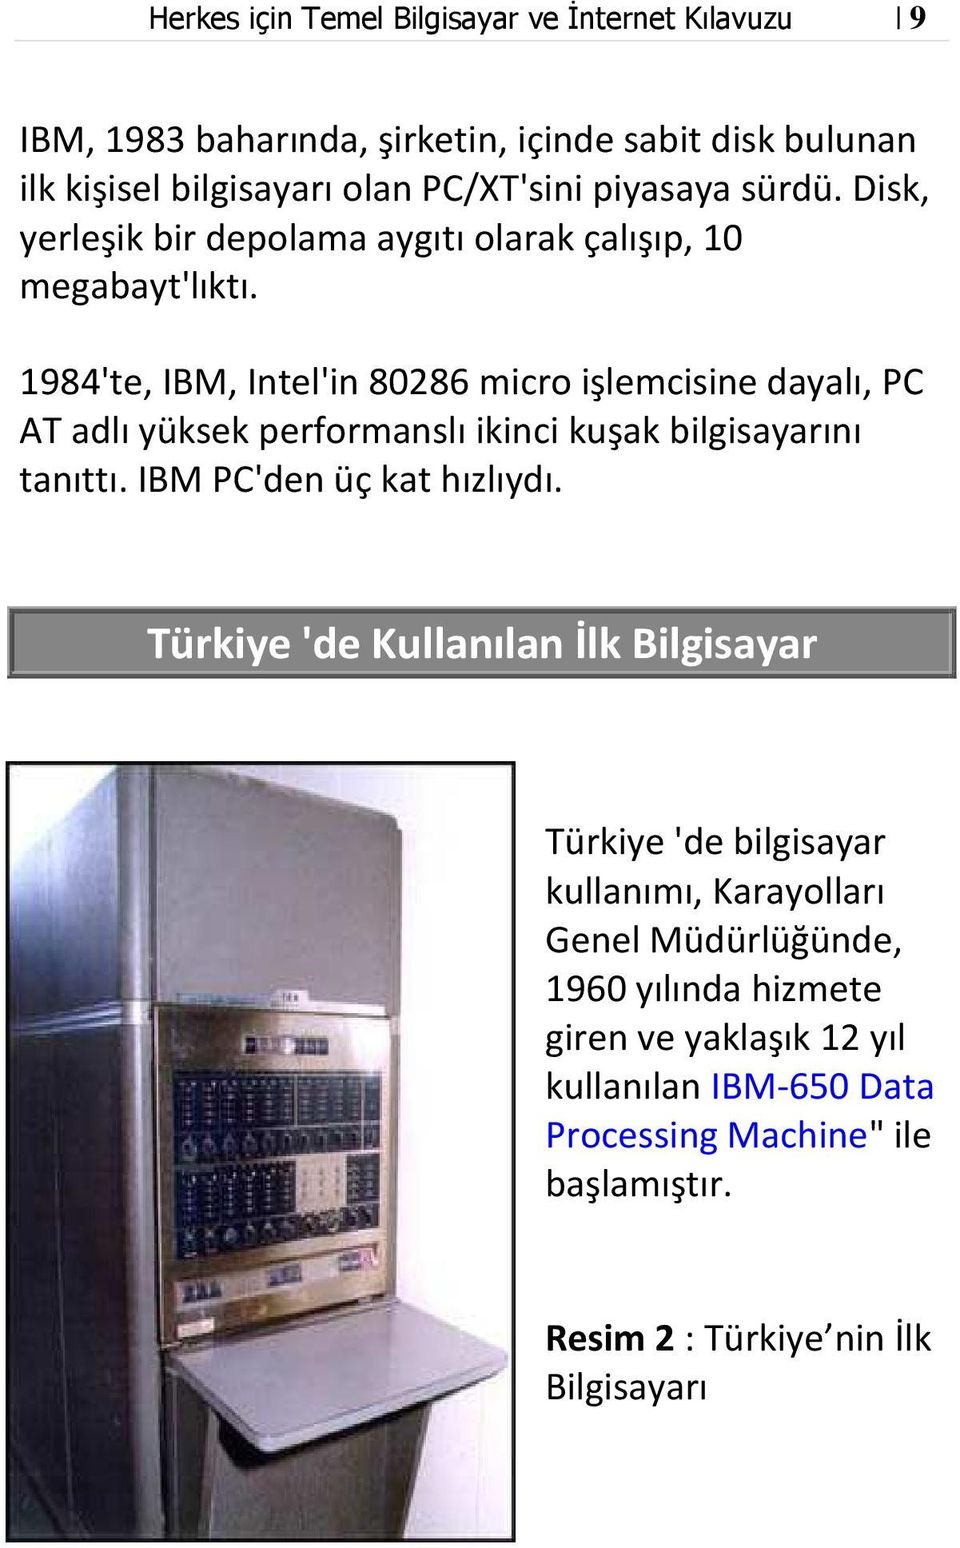 1984'te, IBM, Intel'in 80286 micro işlemcisine dayalı, PC AT adlı yüksek performanslı ikinci kuşak bilgisayarını tanıttı. IBM PC'den üç kat hızlıydı.